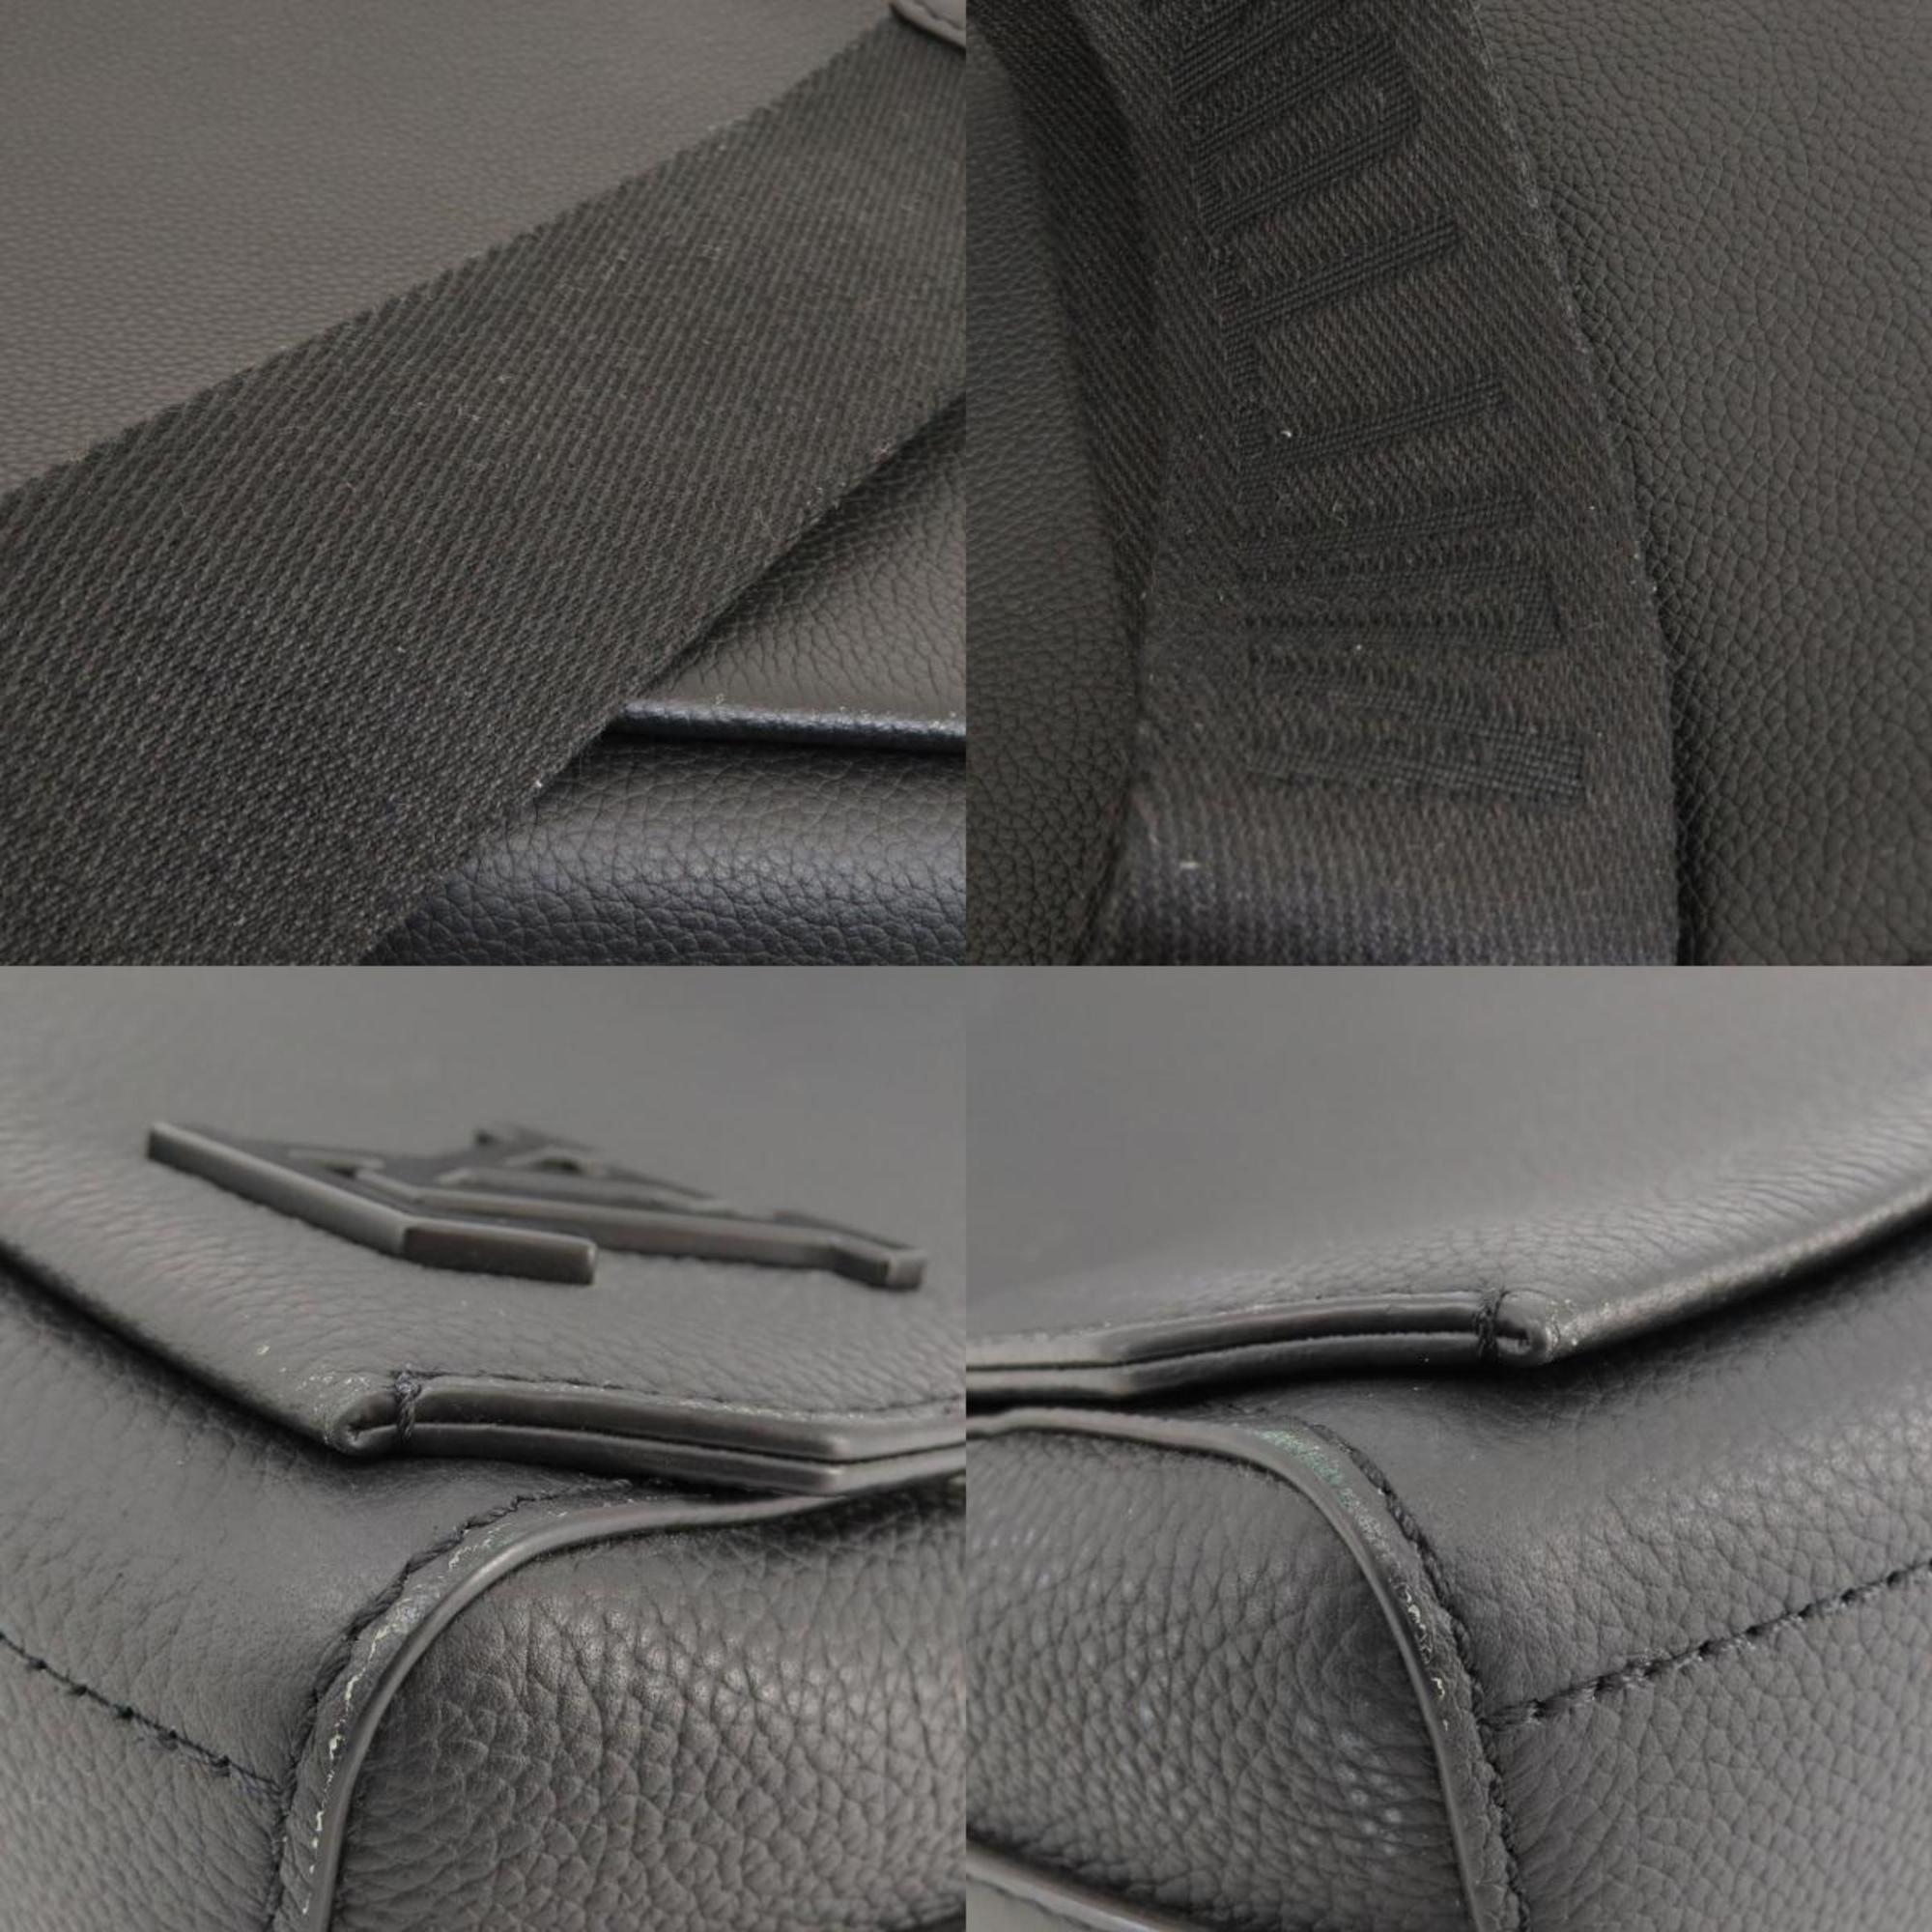 Louis Vuitton M57080 Take Off Shoulder Bag Grained Calf Leather Women's LOUIS VUITTON